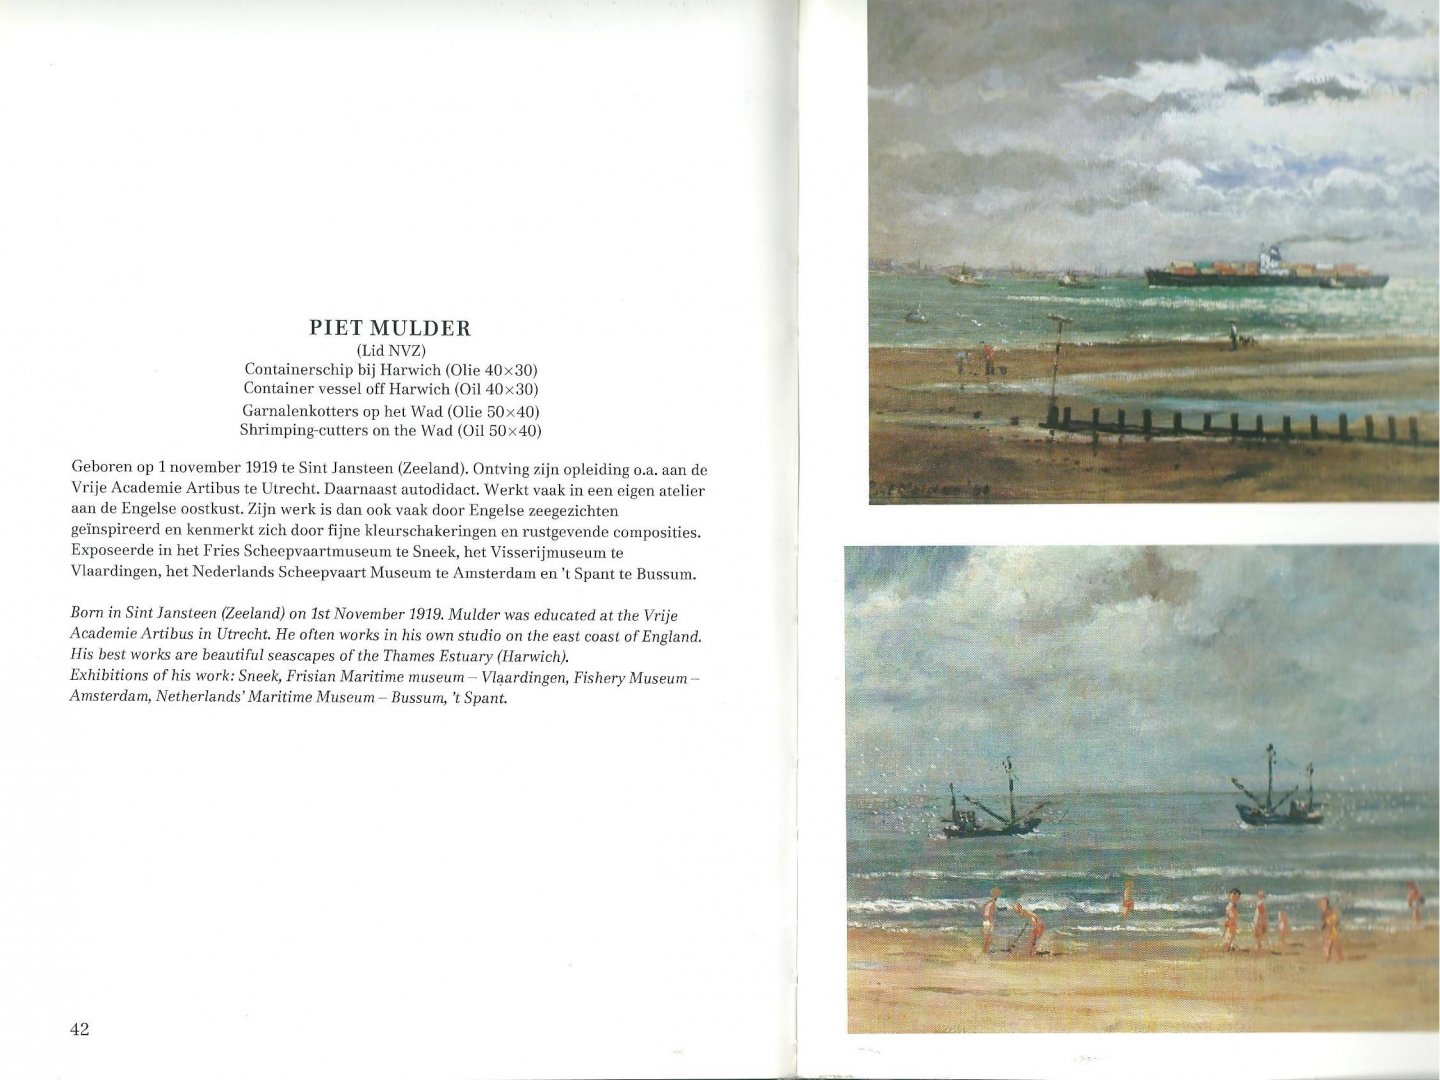 Wever, Henk - Hedendaagse Nederlandse zeeschilders = Contemporary Dutch sea painters